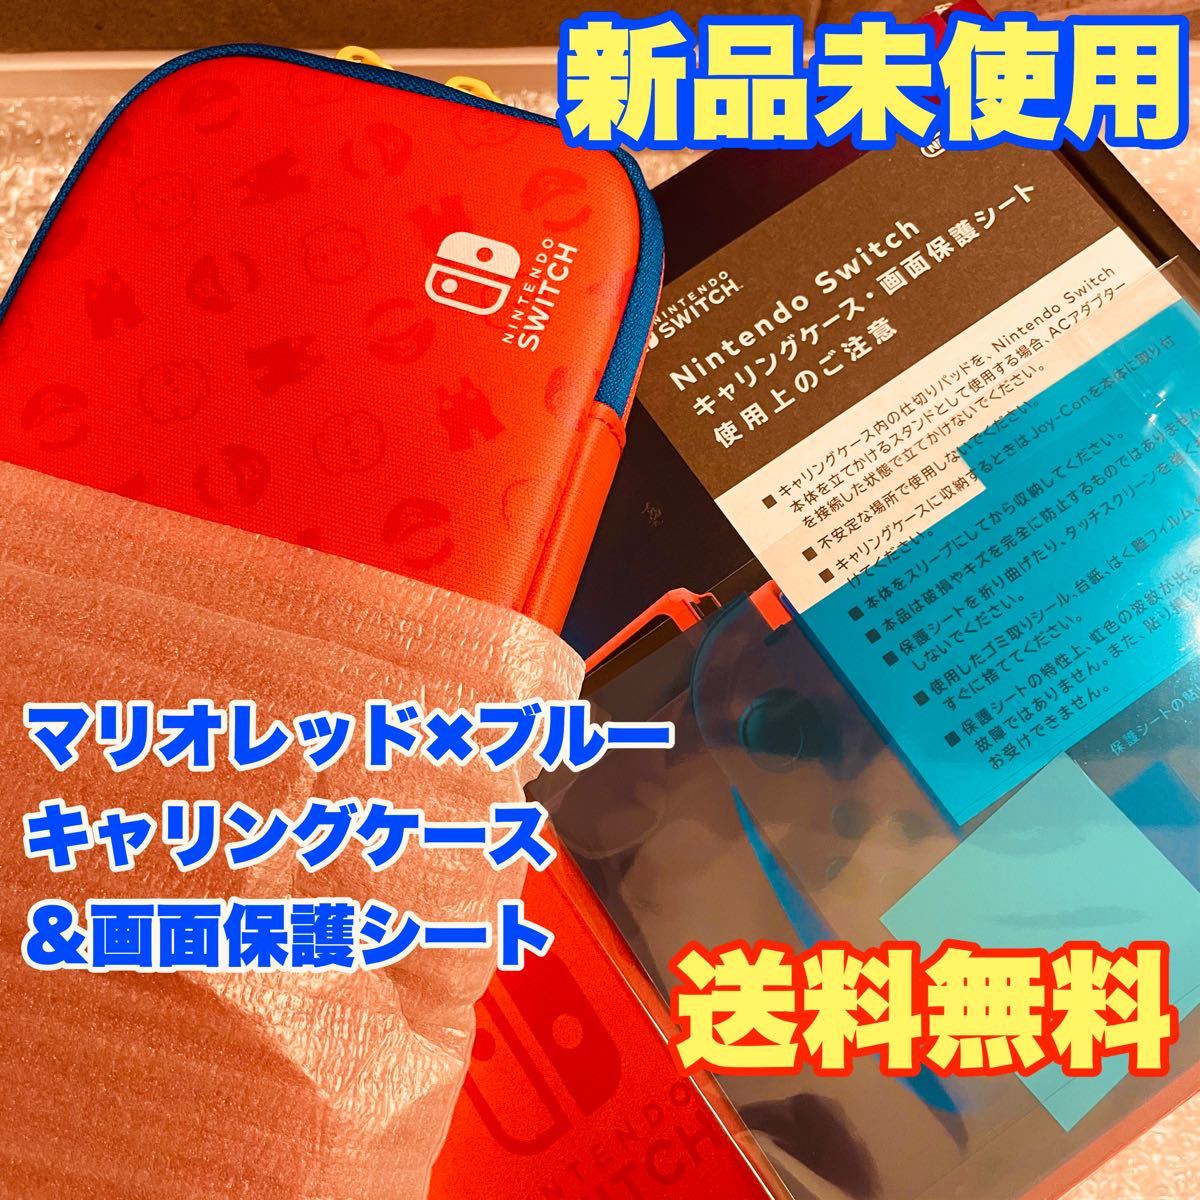 新品 未使用 Nintendo Switch キャリングケース マリオレッド×ブルー エディション & 画面保護シート スイッチ